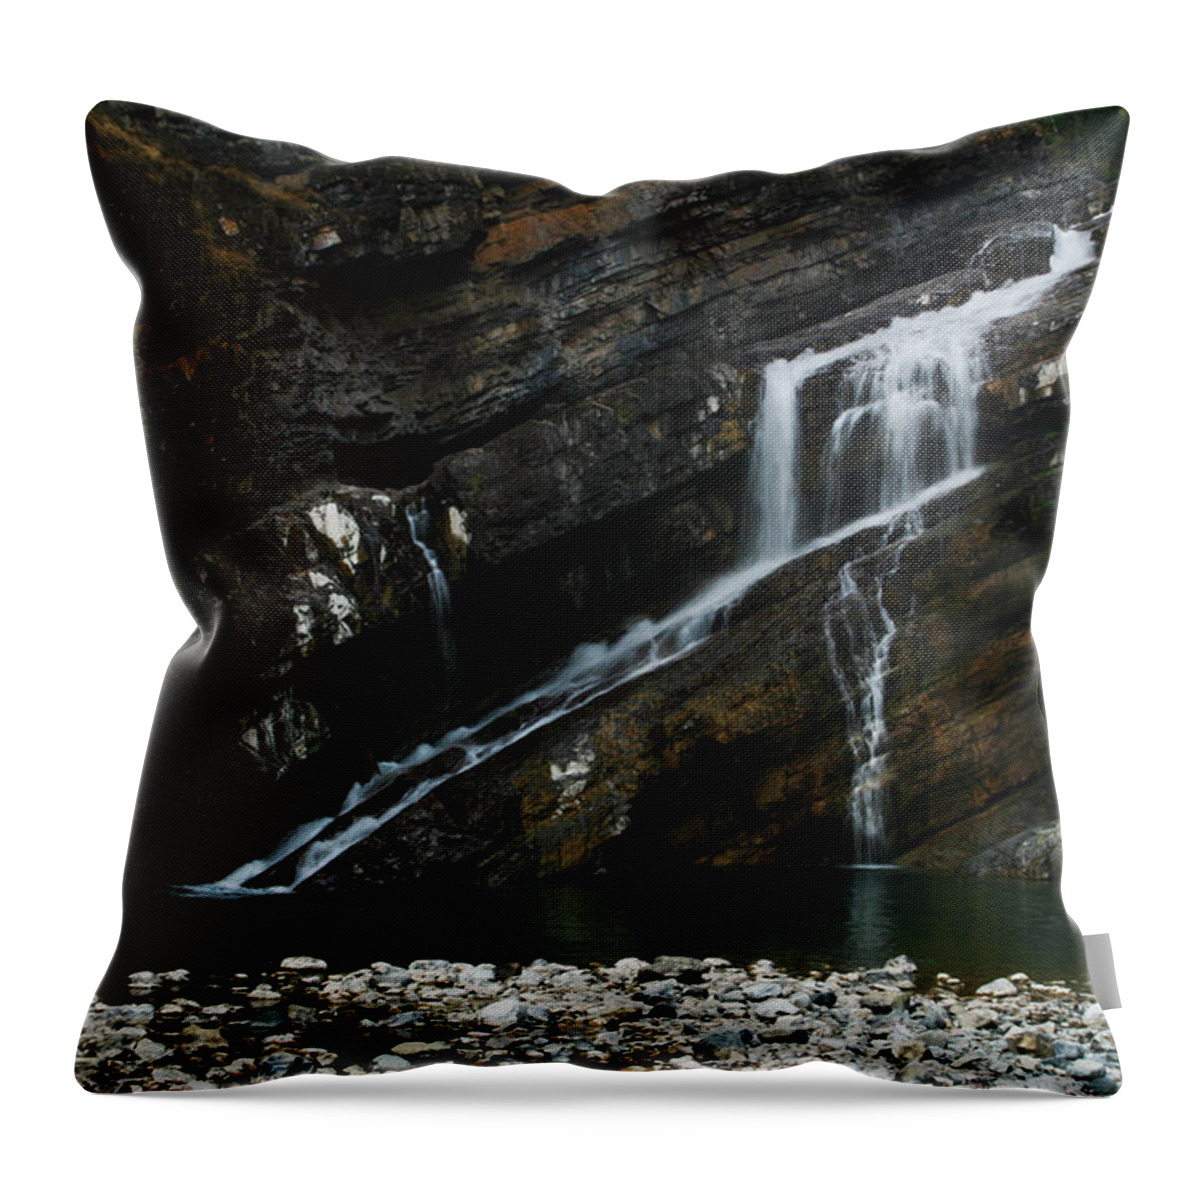 Cameron Falls Throw Pillow featuring the photograph Cameron Falls Waterton Lakes National Park by Benjamin Dahl